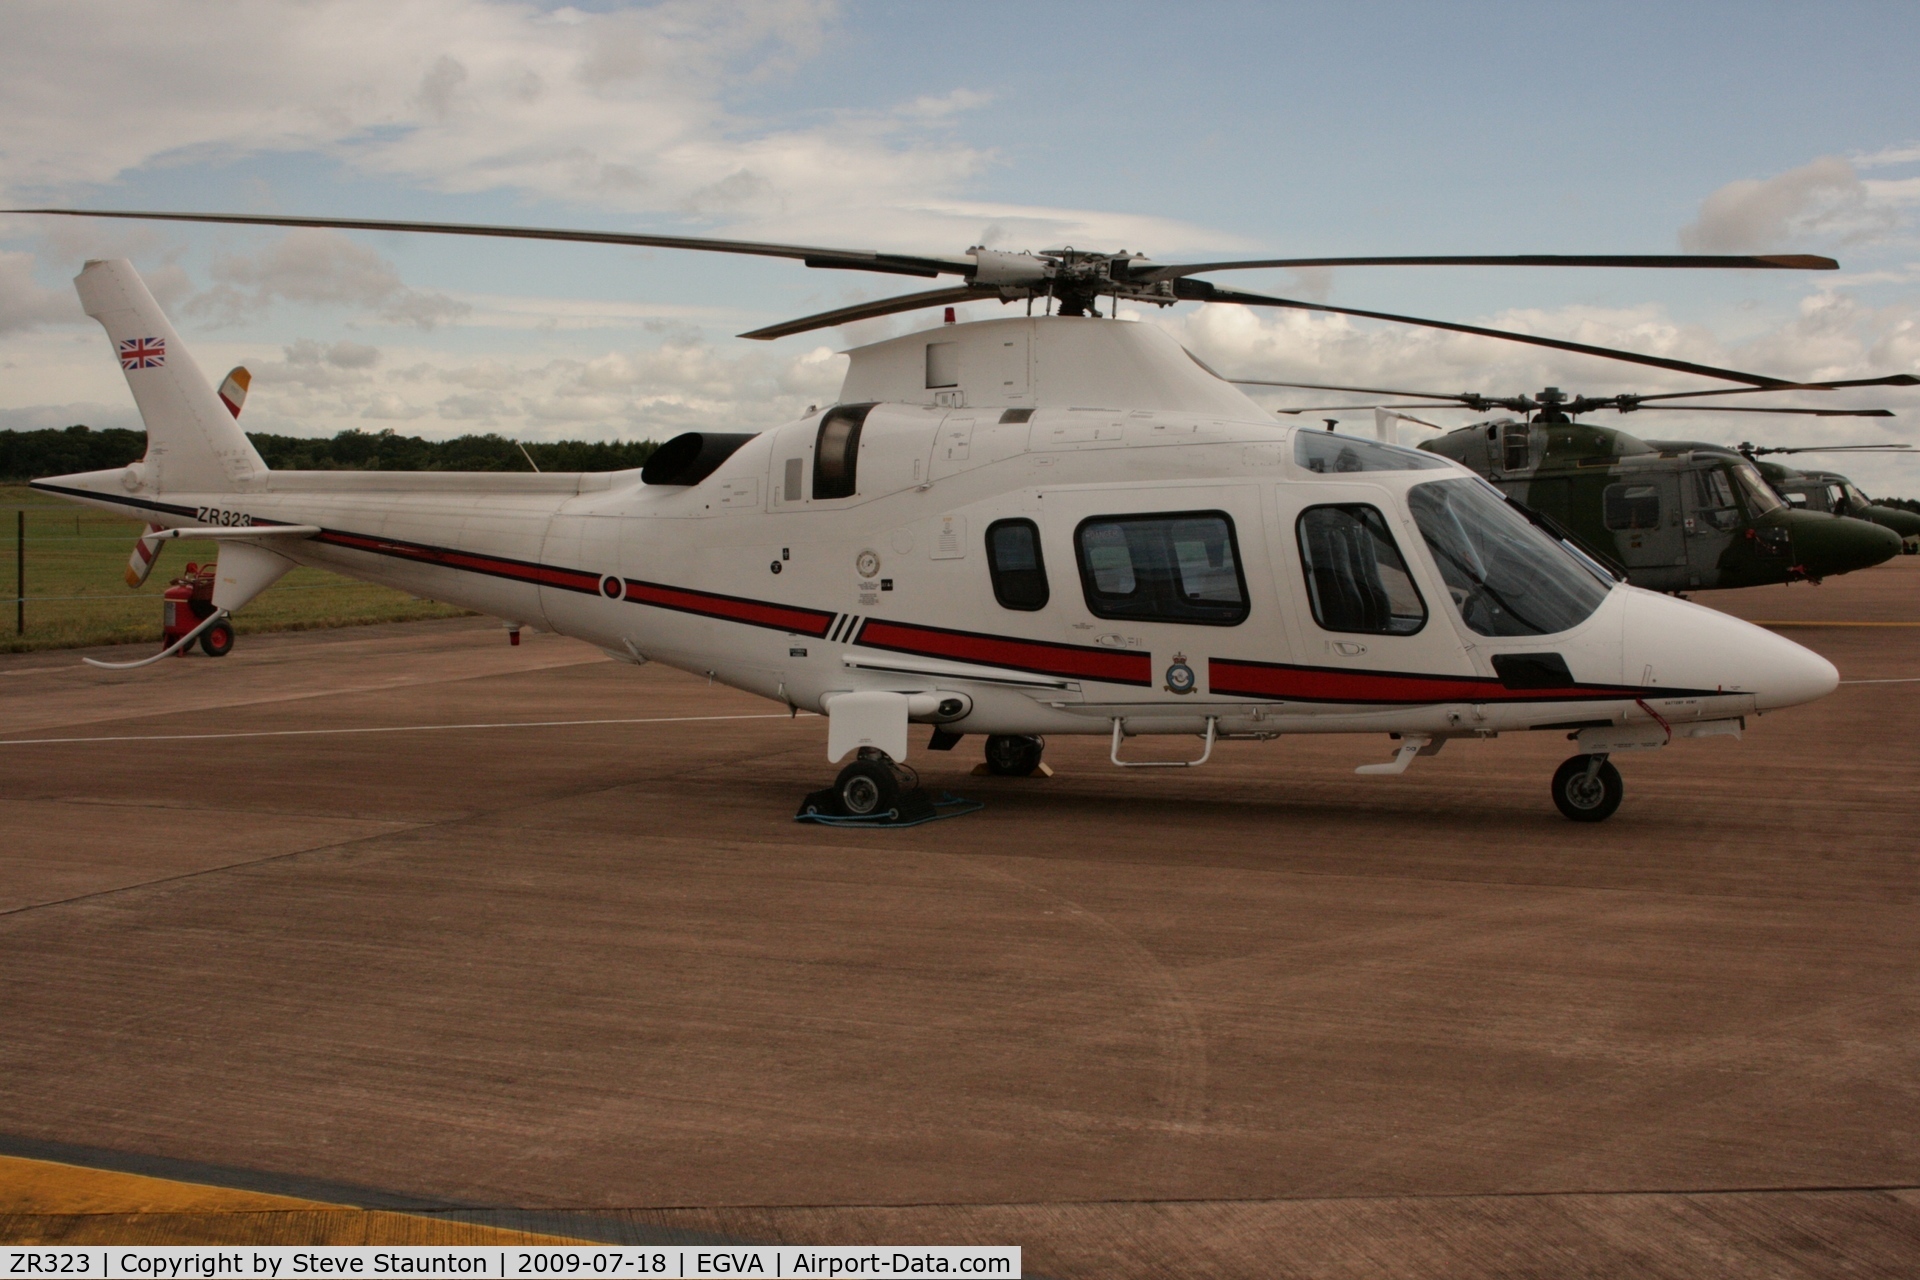 ZR323, 2006 Agusta A-109E Power C/N 11665, Taken at the Royal International Air Tattoo 2009